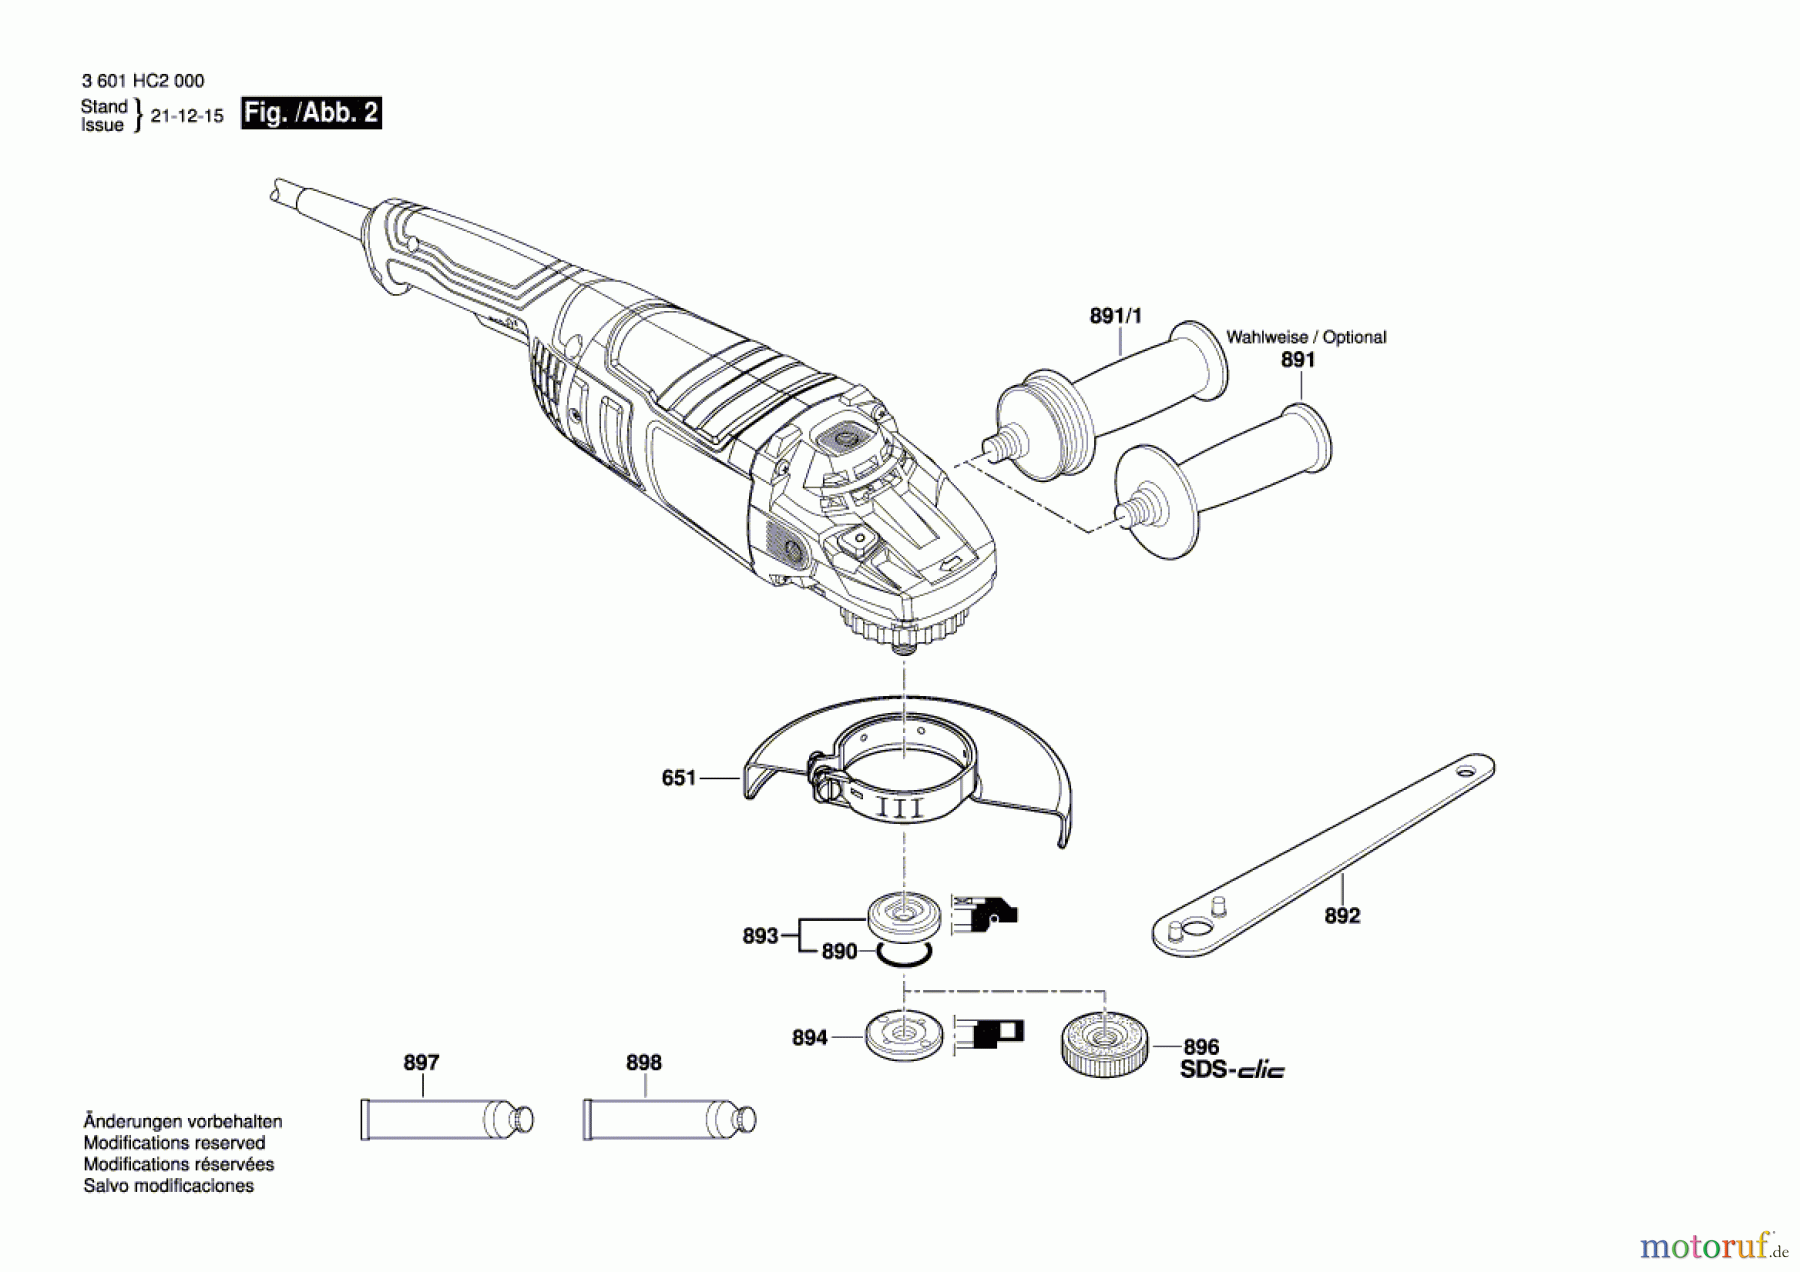  Bosch Werkzeug Winkelschleifer GWS 24-180 Seite 2